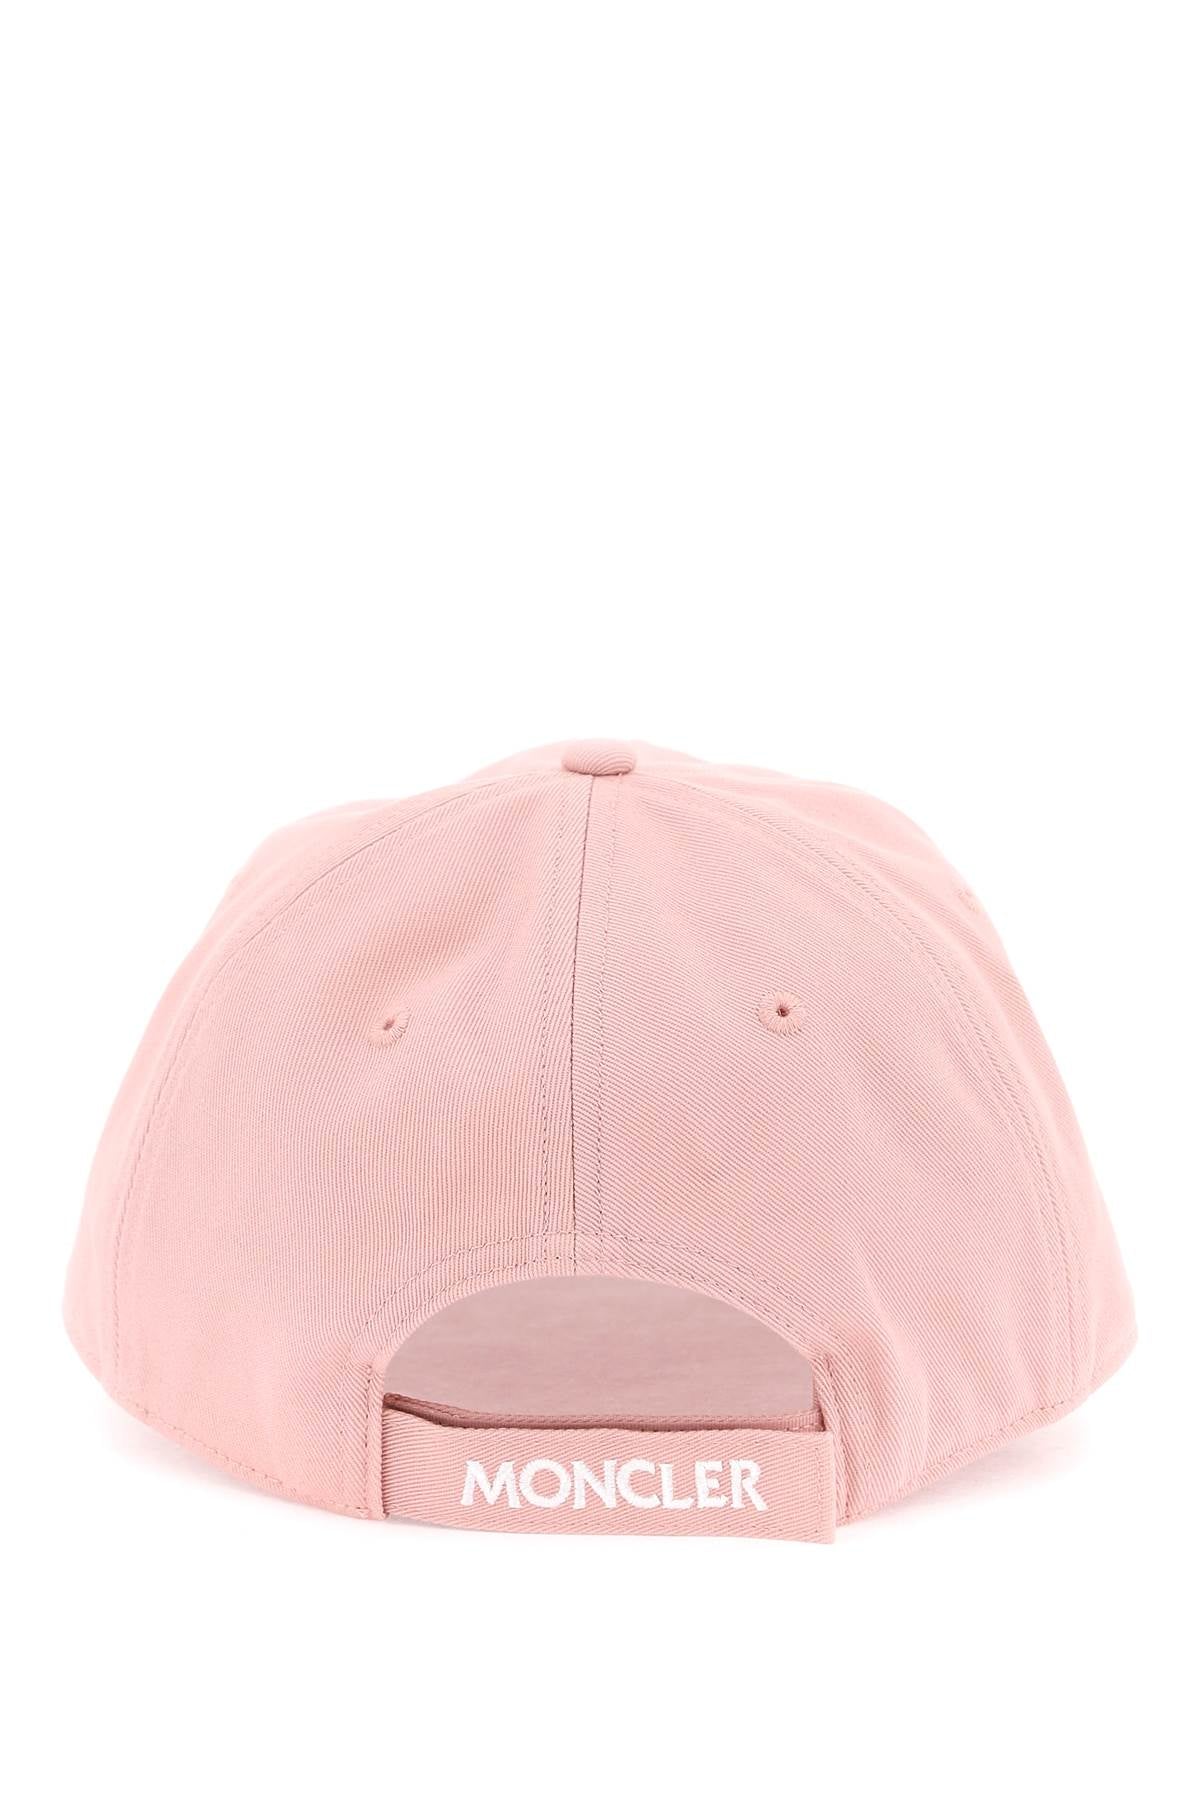 Moncler MONCLER Hat pink 3B00041V0006510